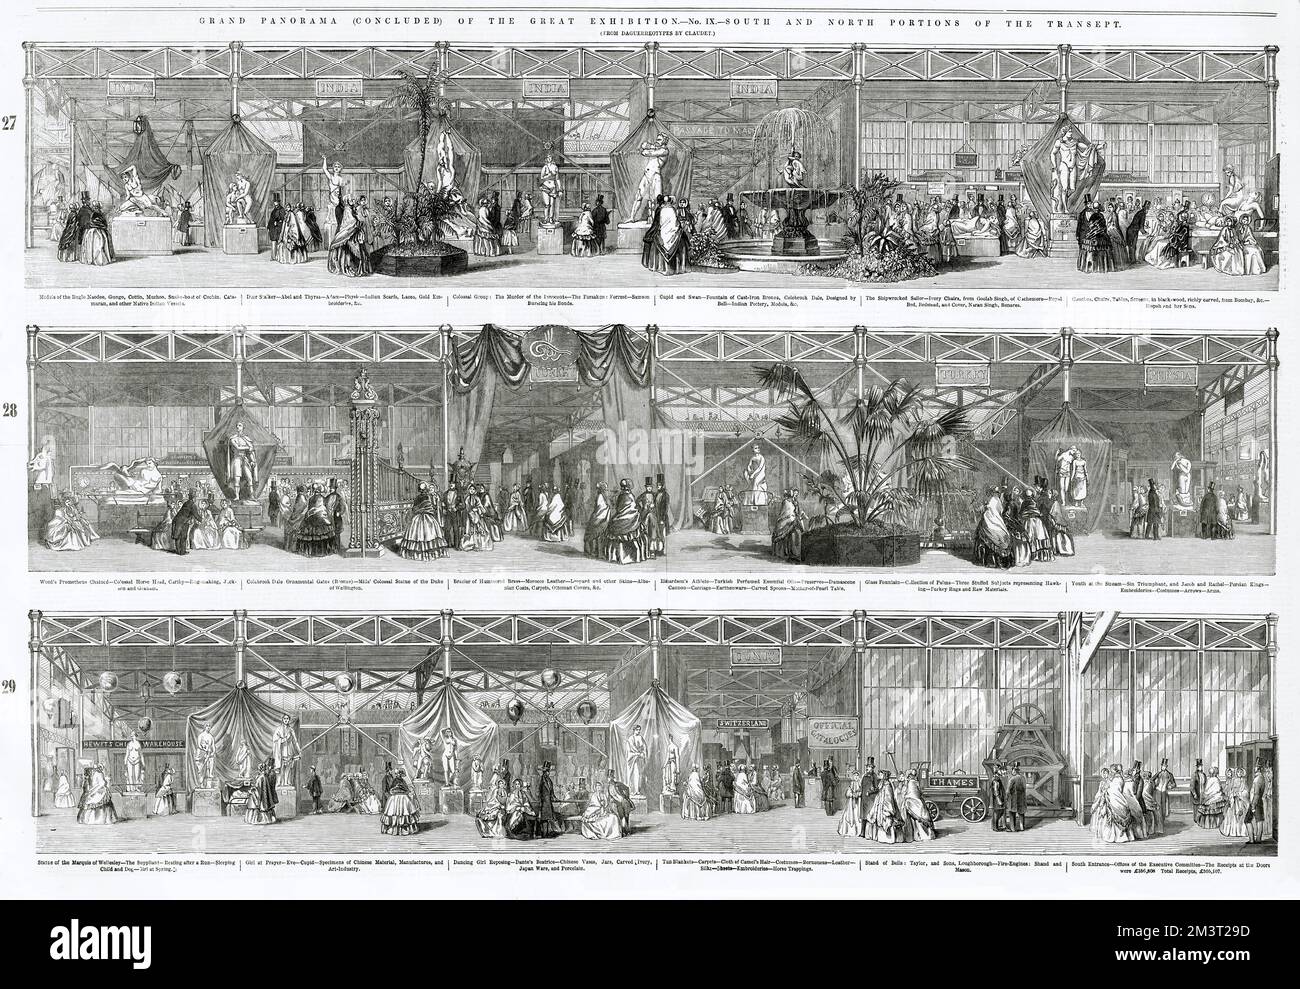 Grande panorama della Grande Mostra che mostra il transetto sud e nord. Foto Stock